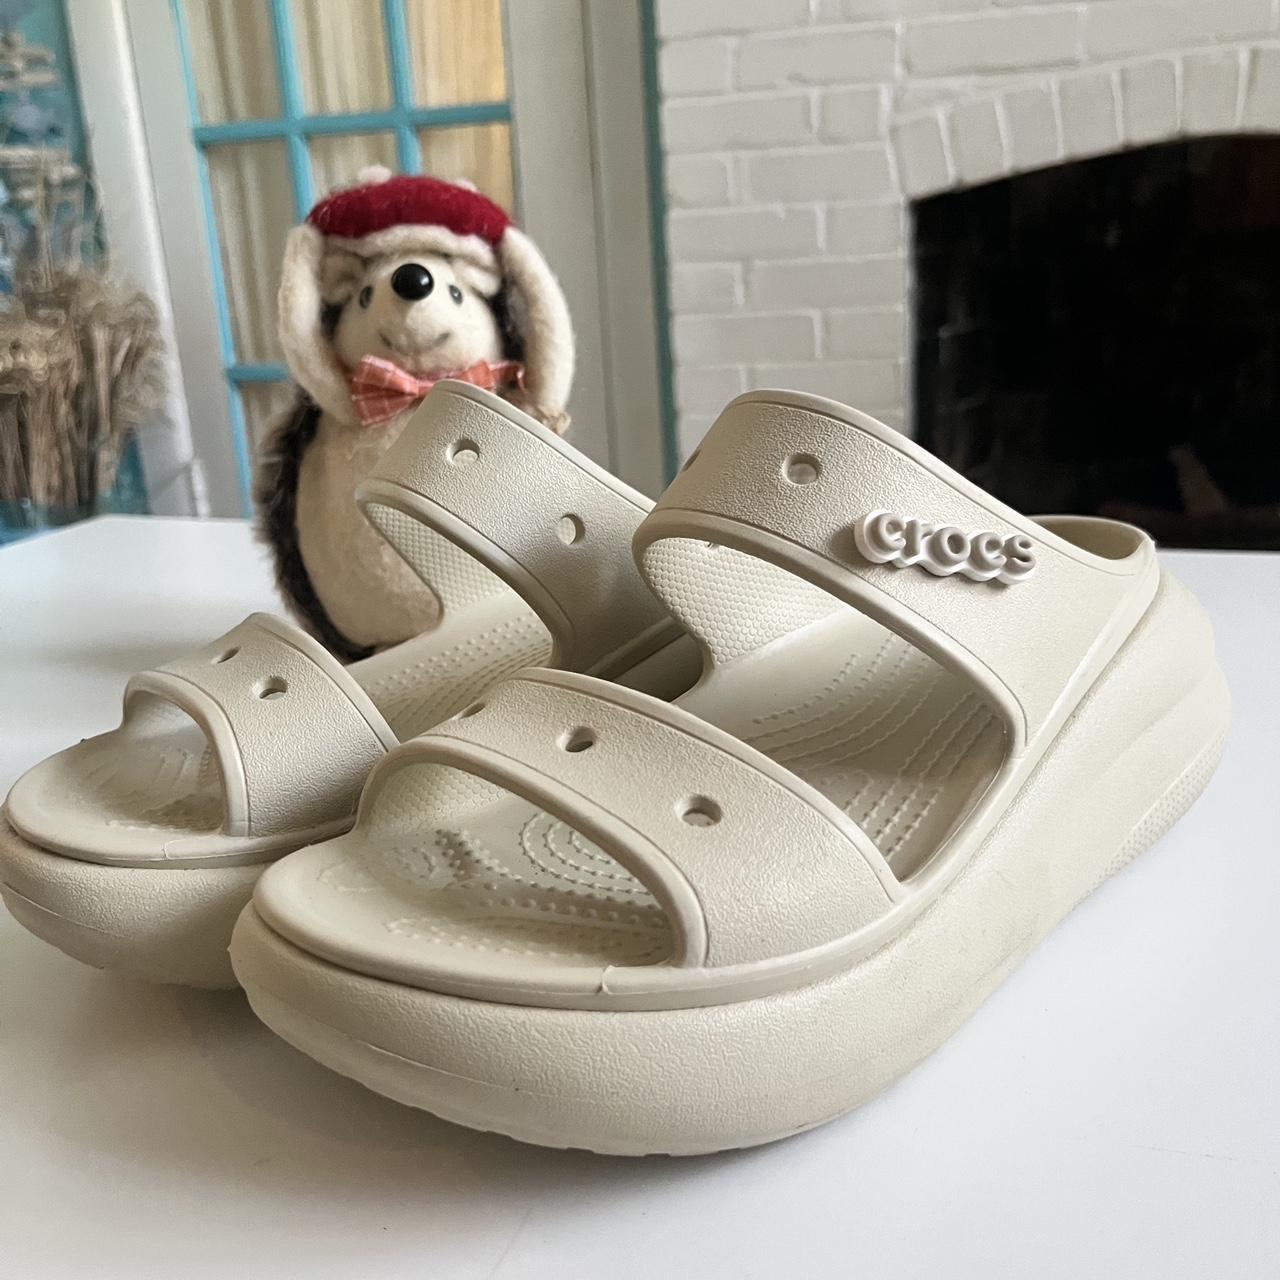 Crocs Women's Cream Sandals | Depop